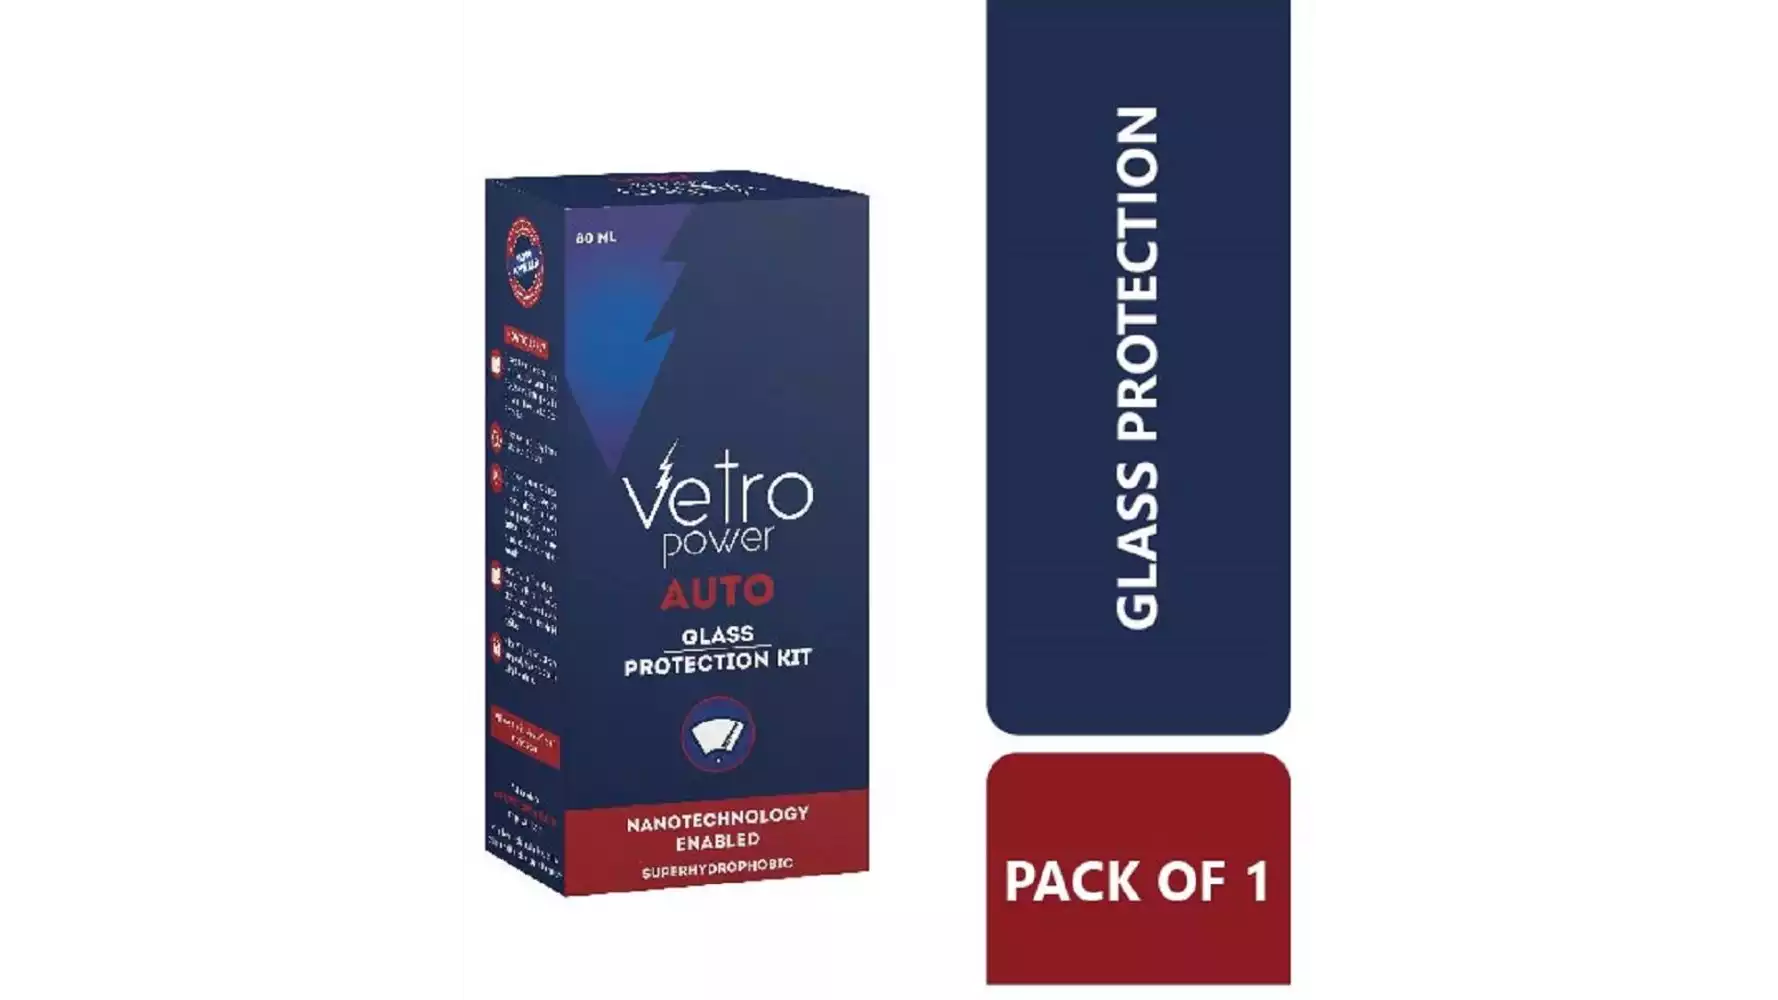 Vetro Power Auto: Glass Protection Kit (80ml)